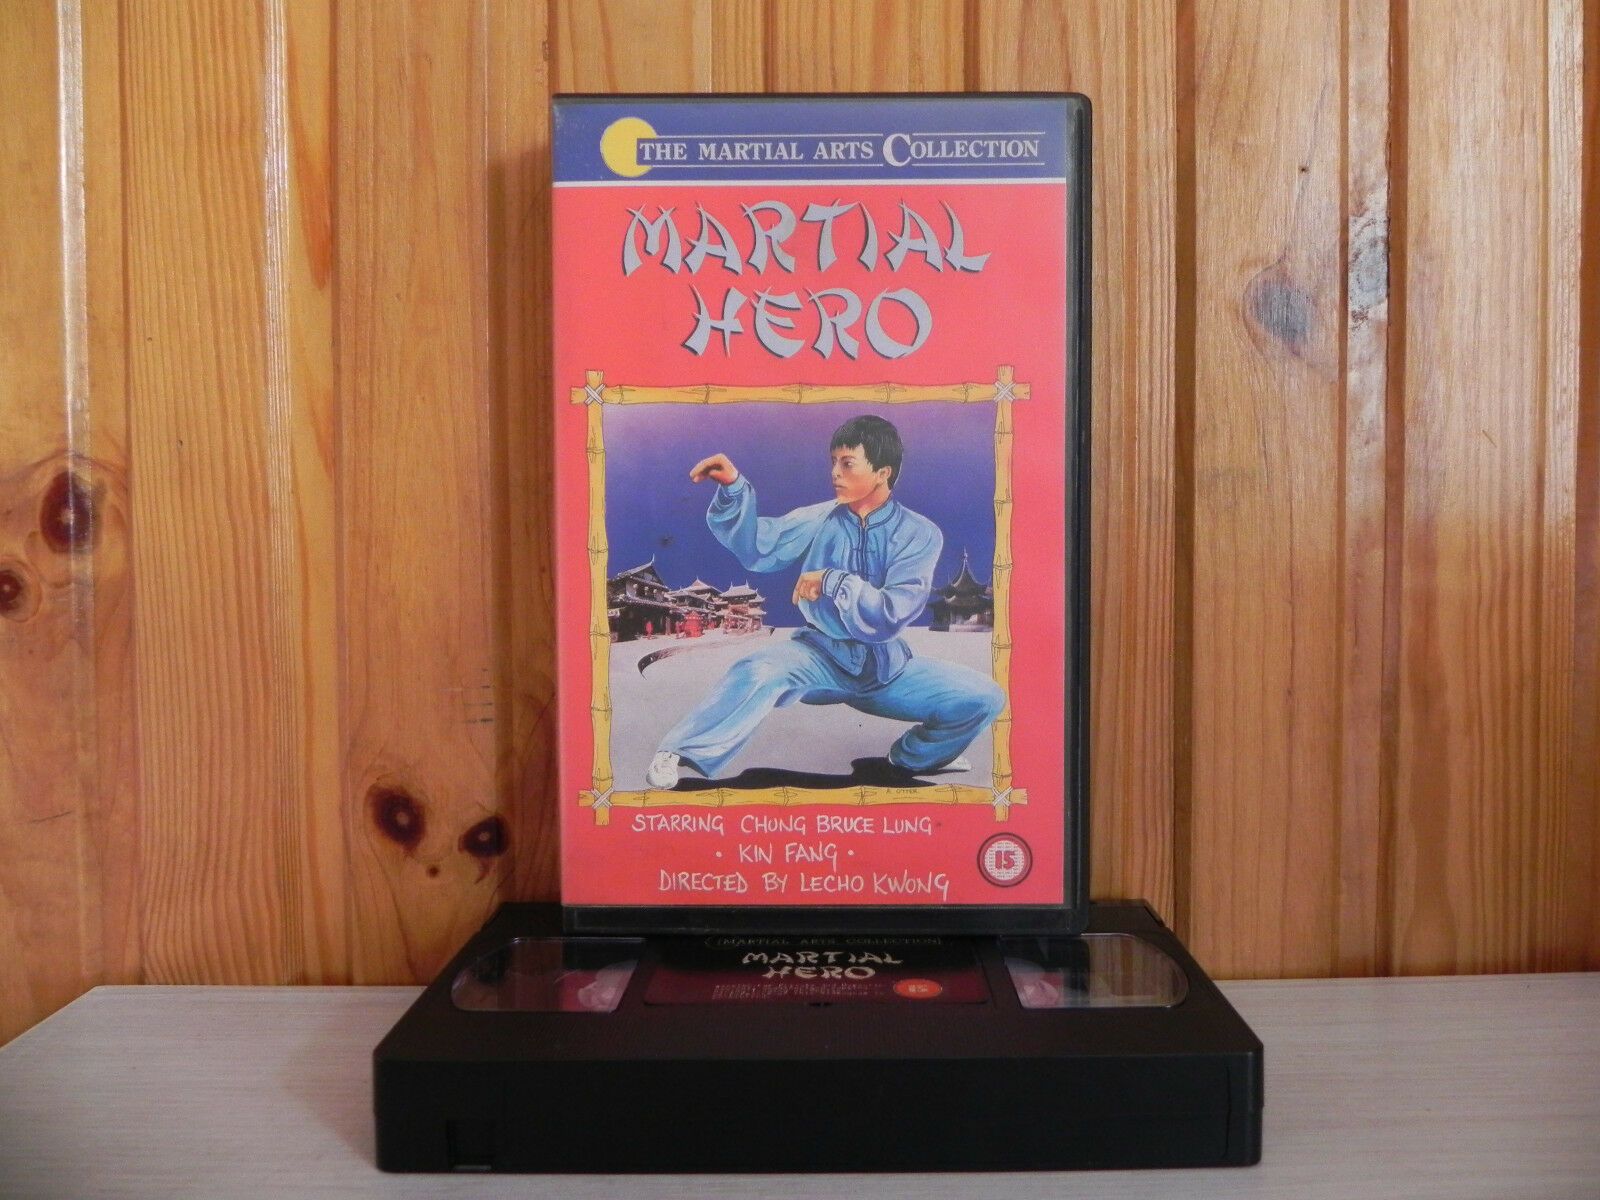 Martial Hero - Chueng Lung/Kin Fang/Lecho Kwong - Big-Box - Kung-Fu - VHS-